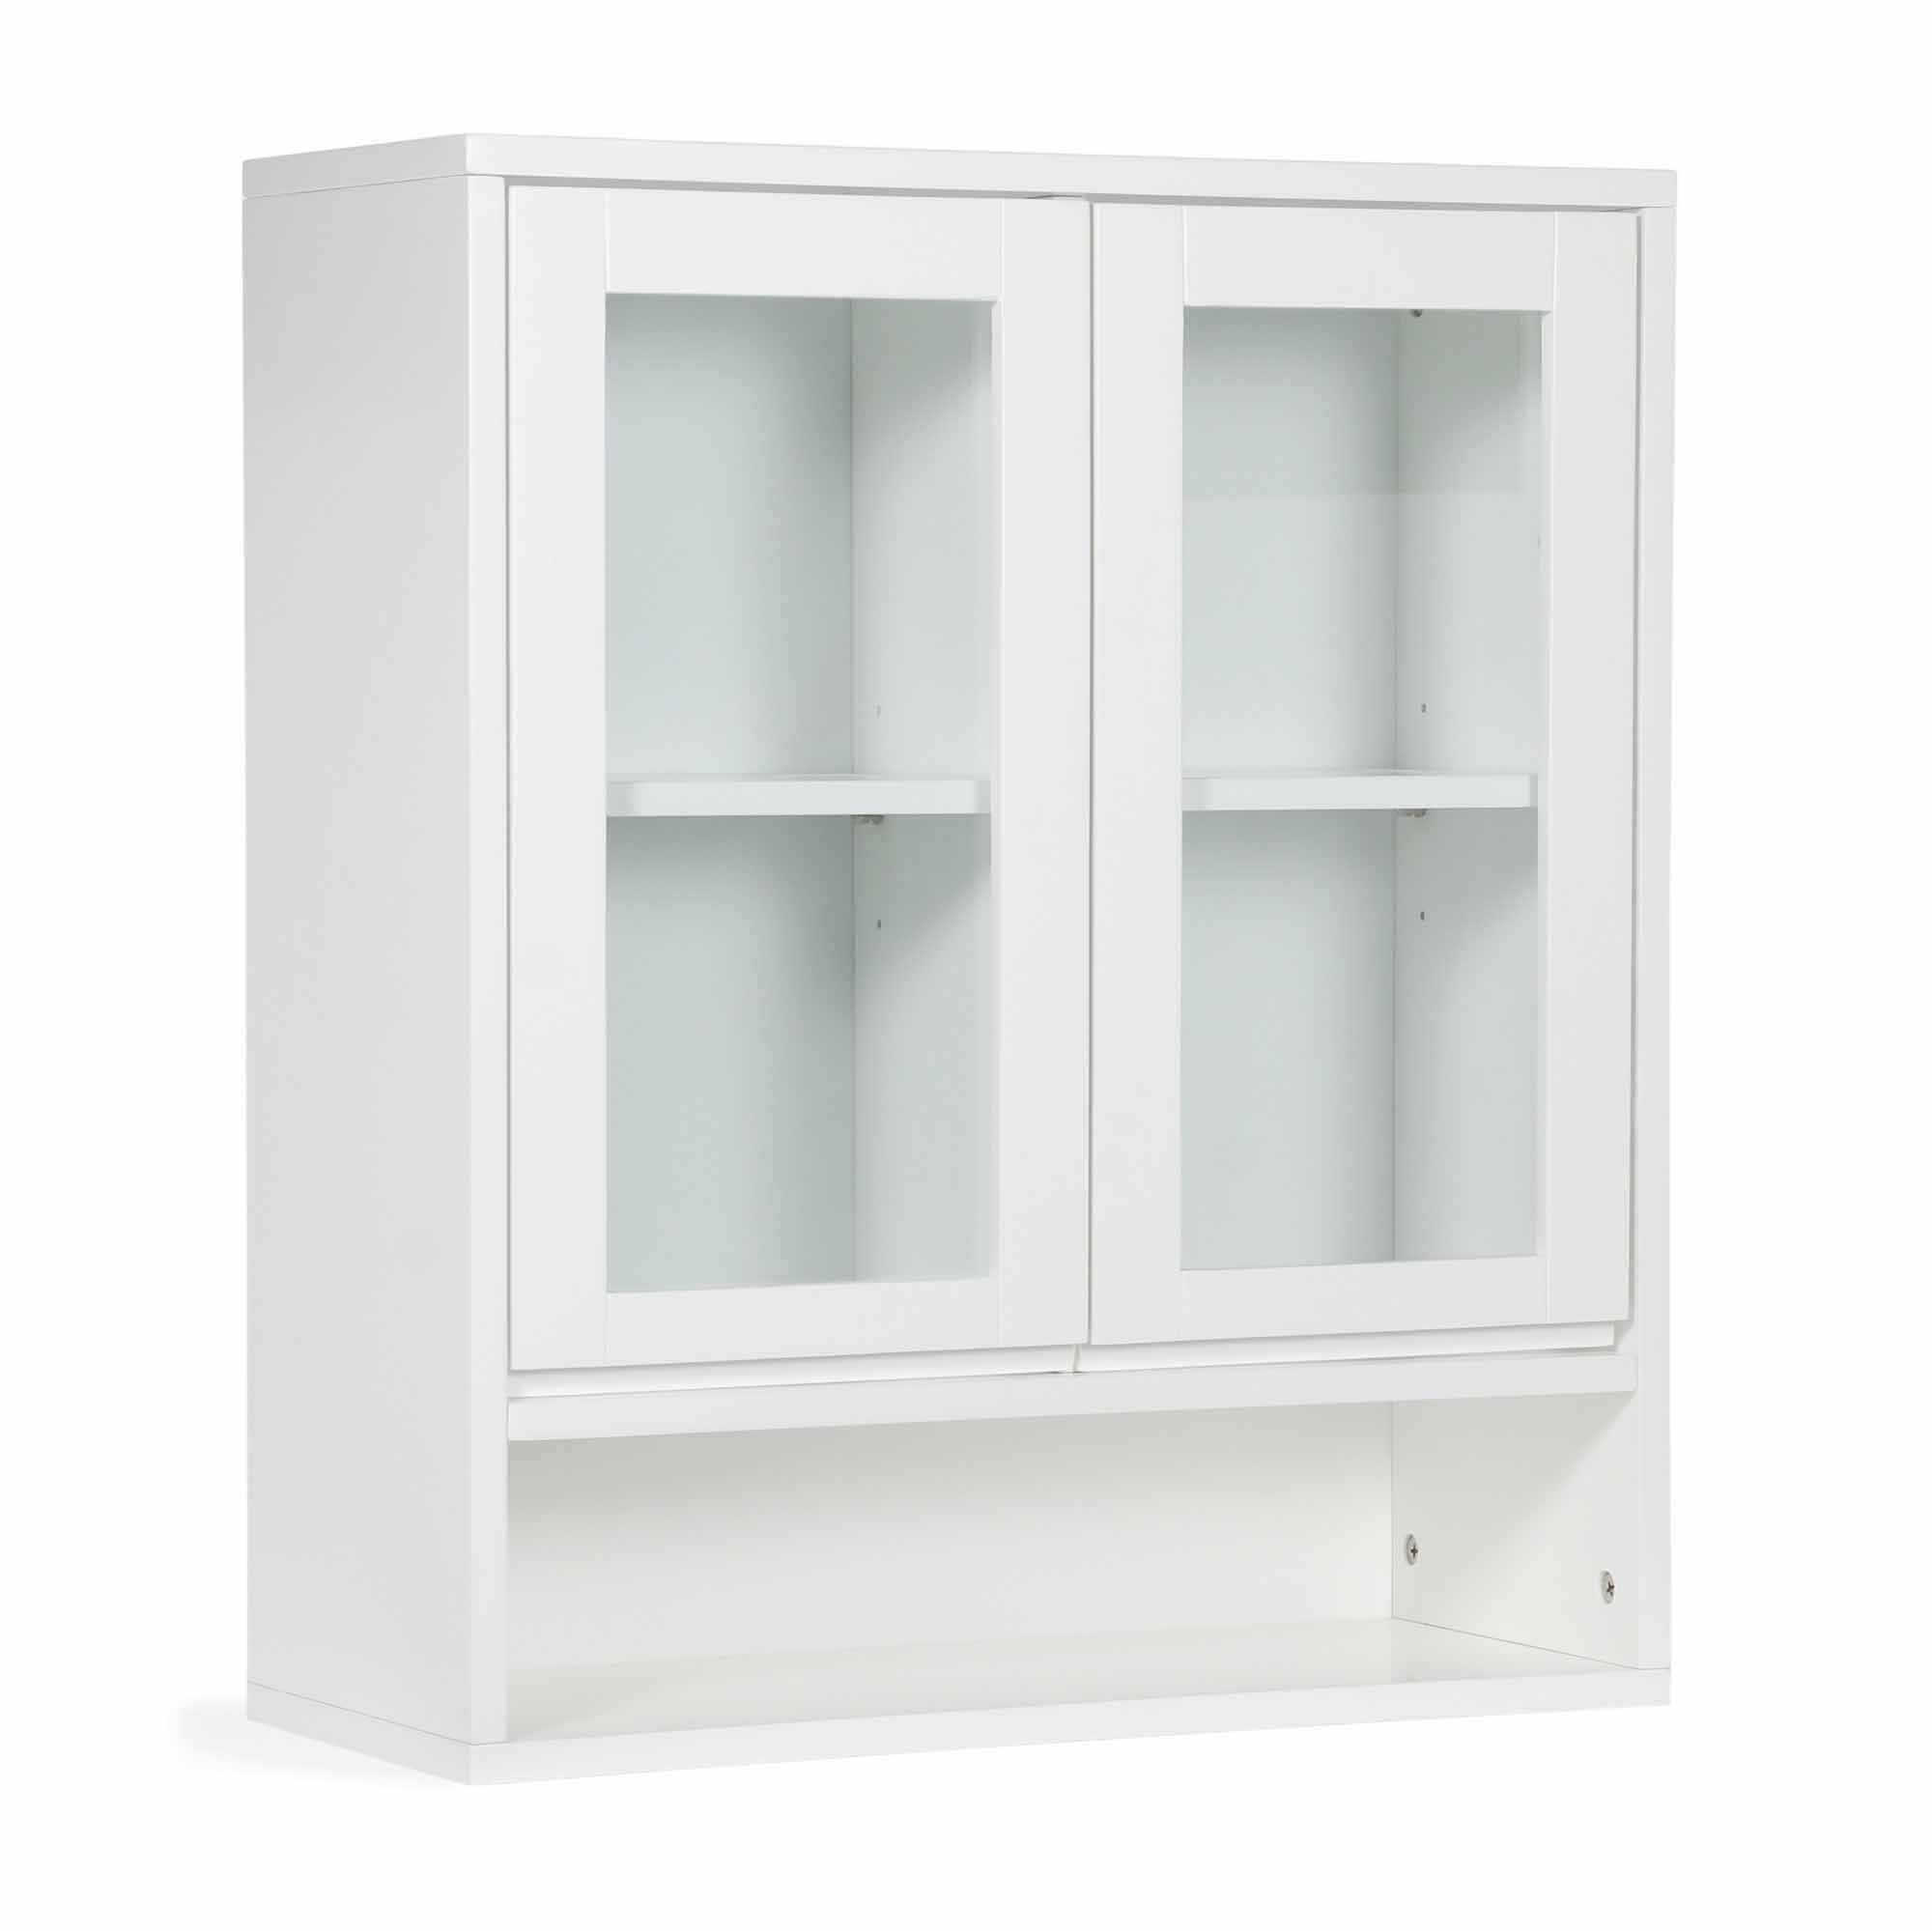 37.5 Bathroom Floor Cabinet With Drawer, Glass Door Side Cabinet